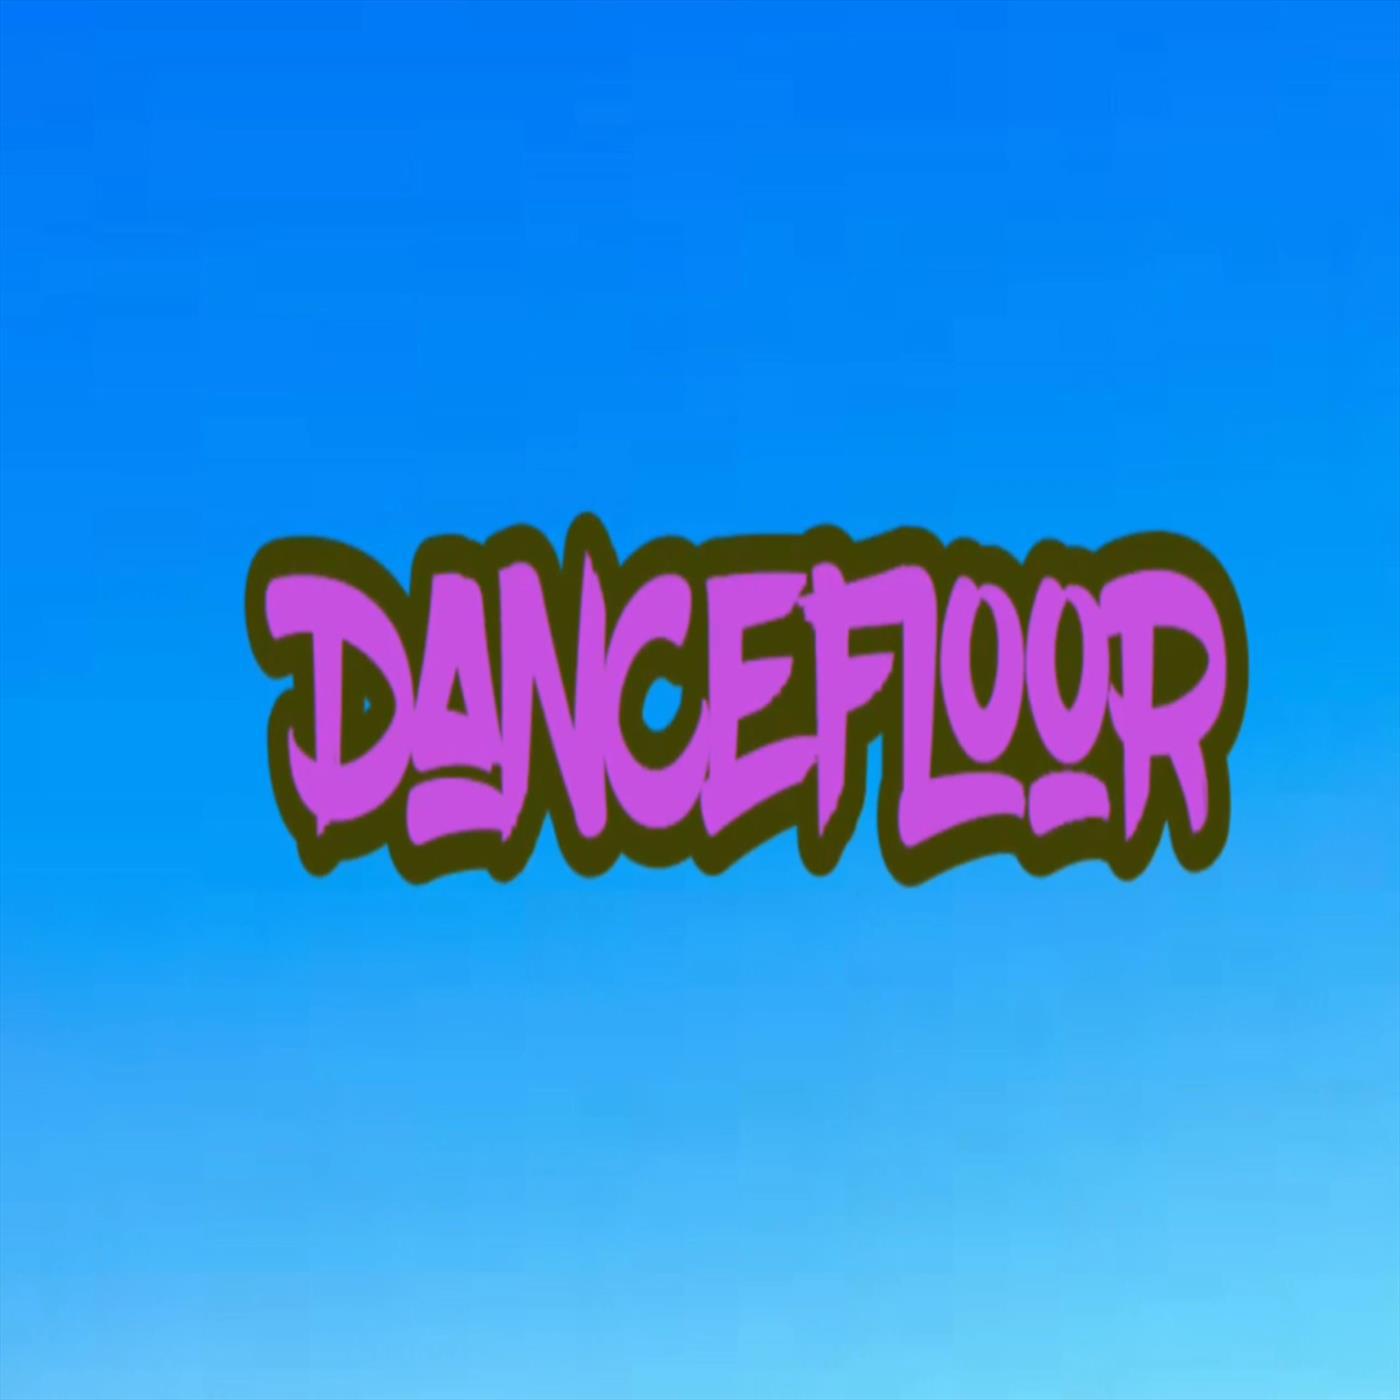 DanceFloor